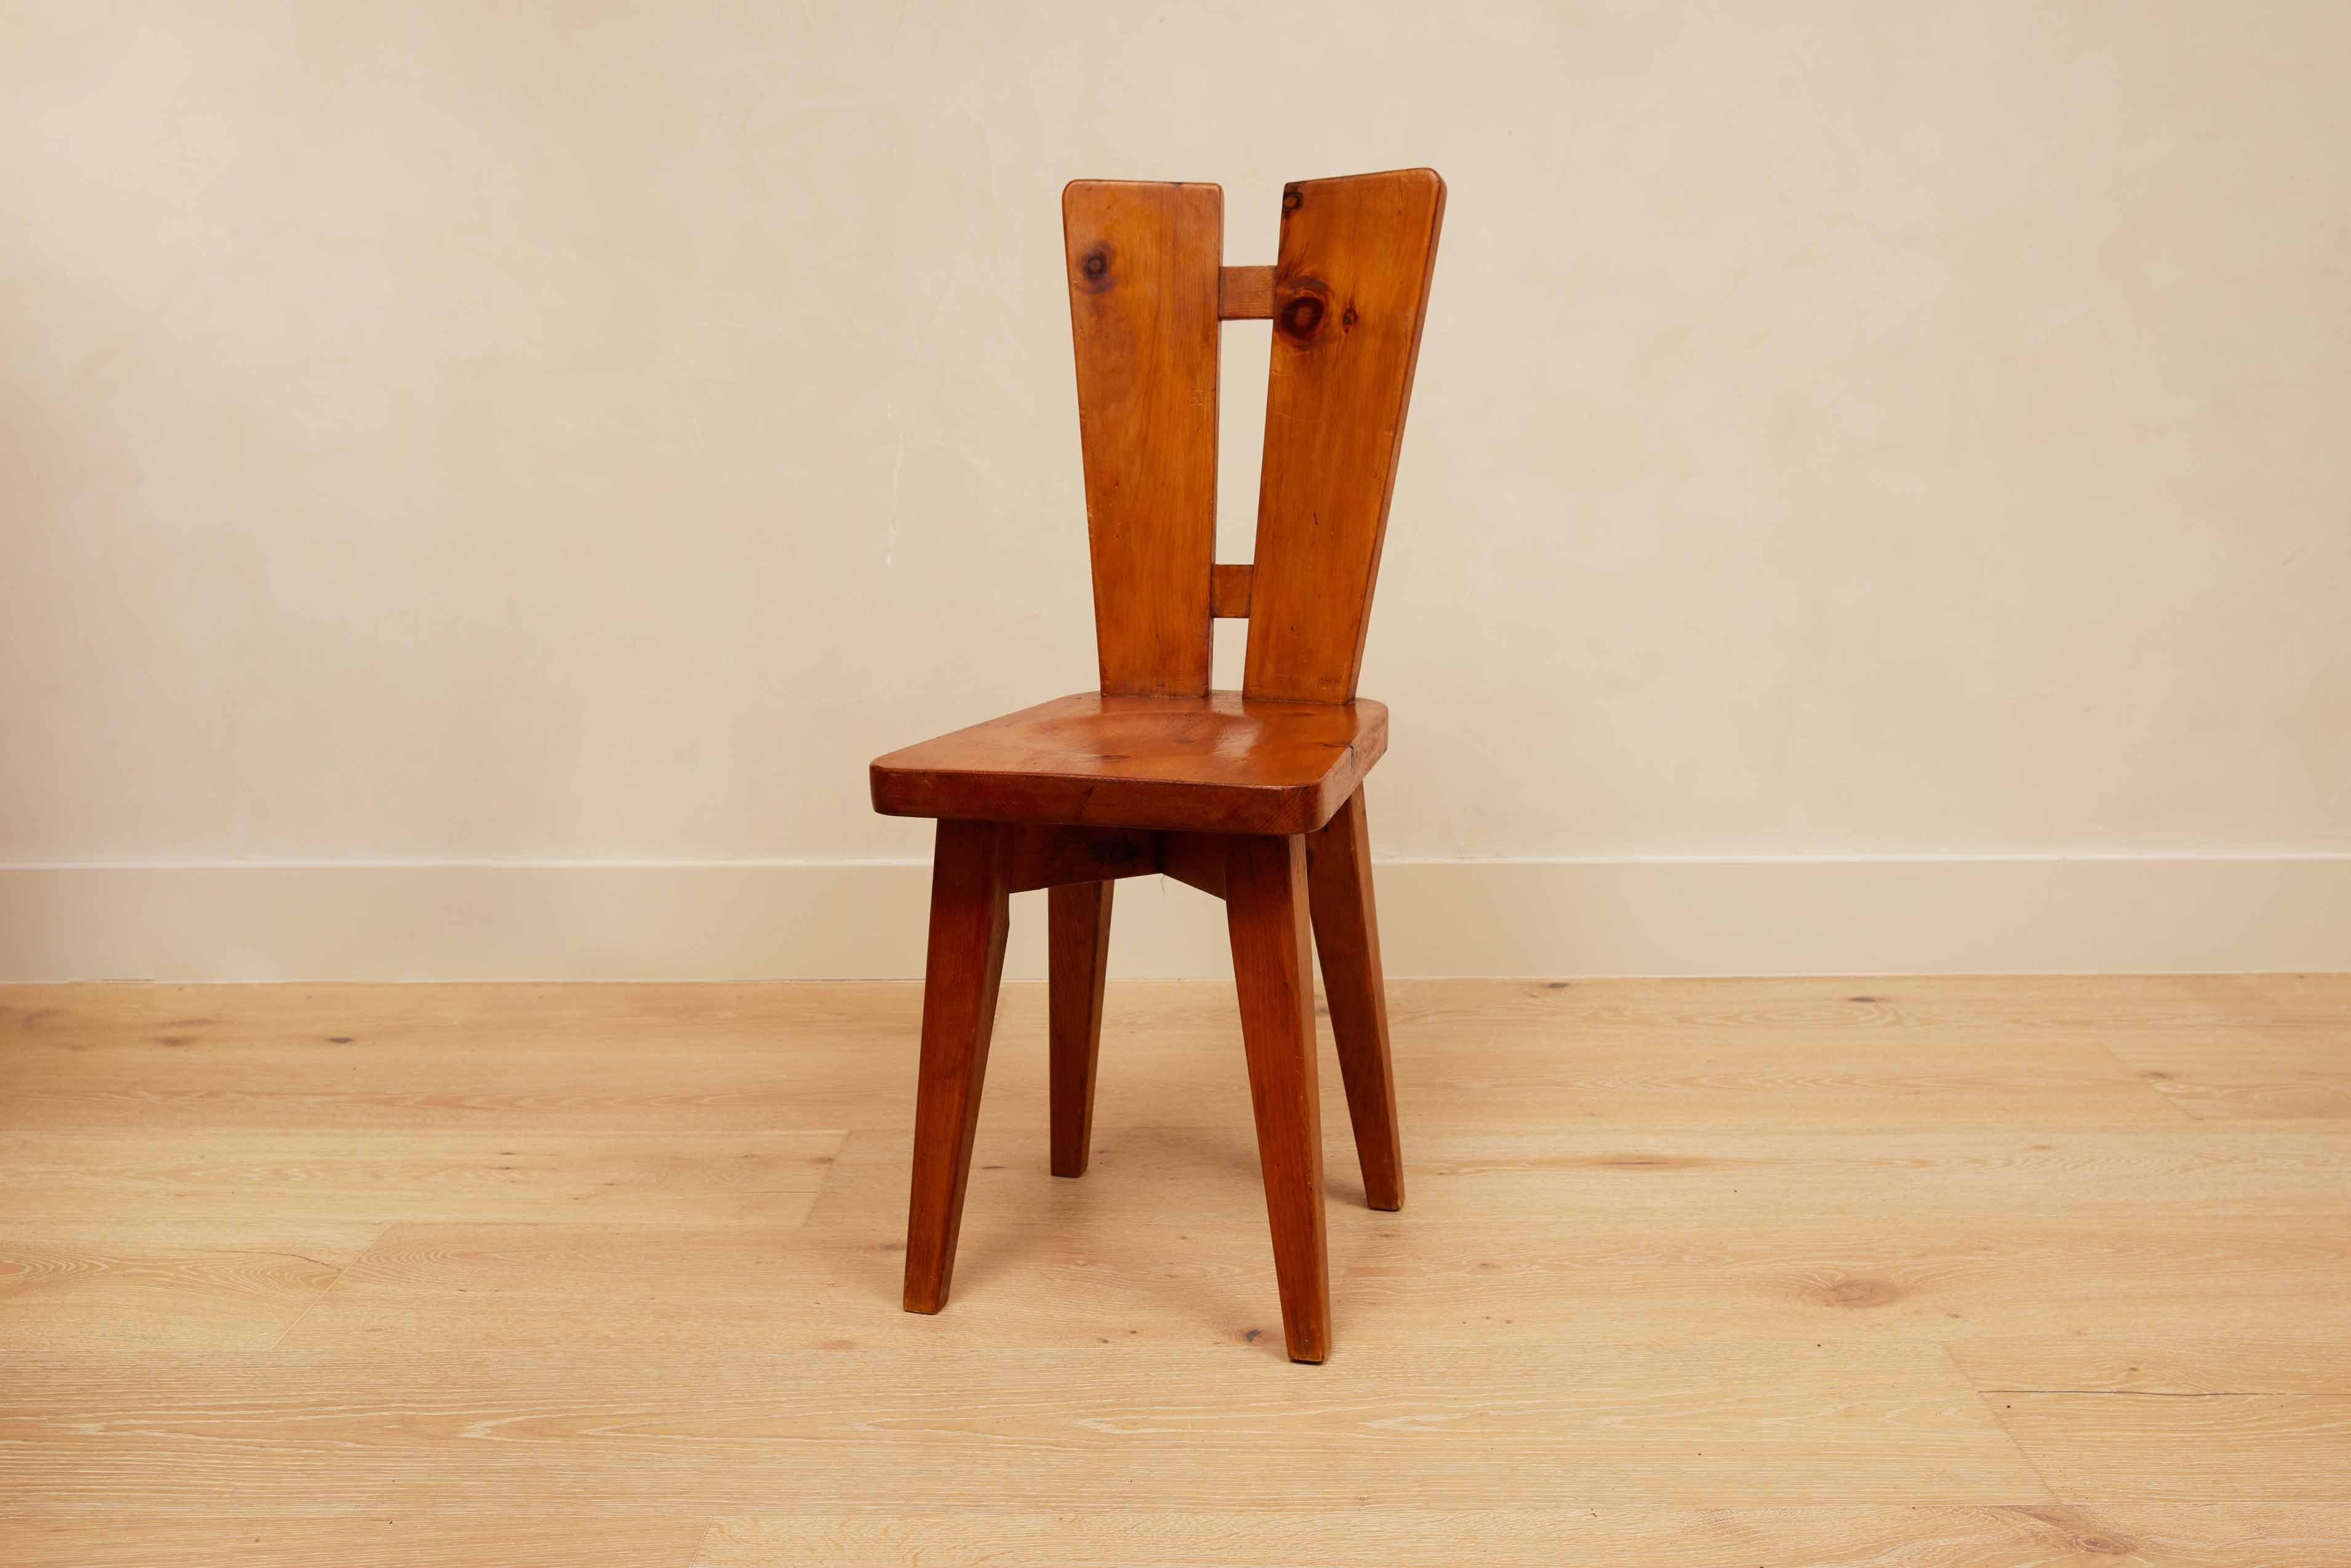 Christian Durupt, Esszimmerstühle, Kiefernholz, Frankreich, 1960er Jahre

Bitte beachten Sie, dass ein Stuhl etwas höher ist als der andere - der kürzere Stuhl ist 33